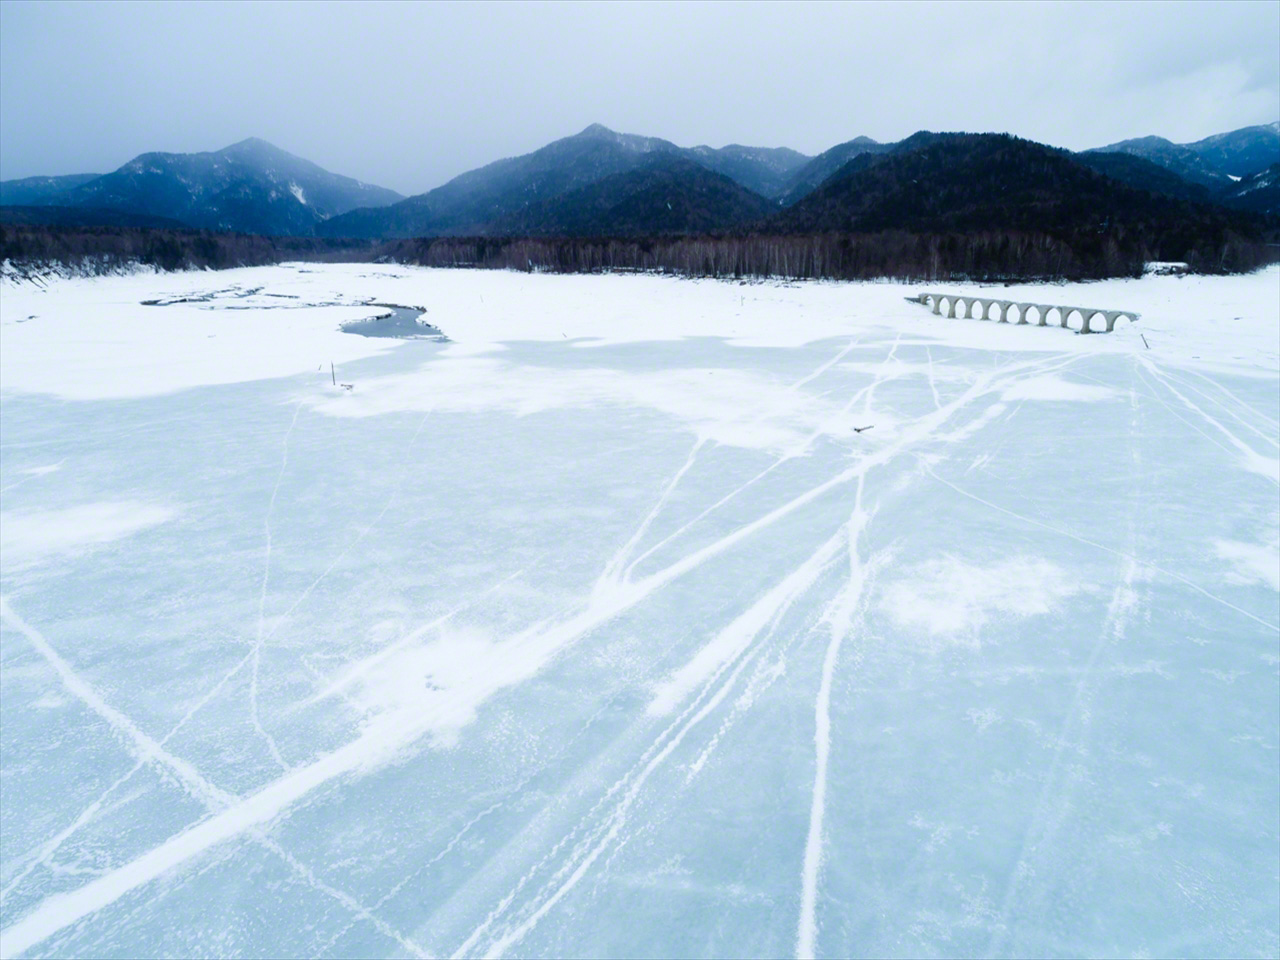 يصبح الجليد المتكون على البحيرة هشًا في مارس/ آذار، مما يجعل المغامرة على السطح أمر محفوف بالمخاطر.